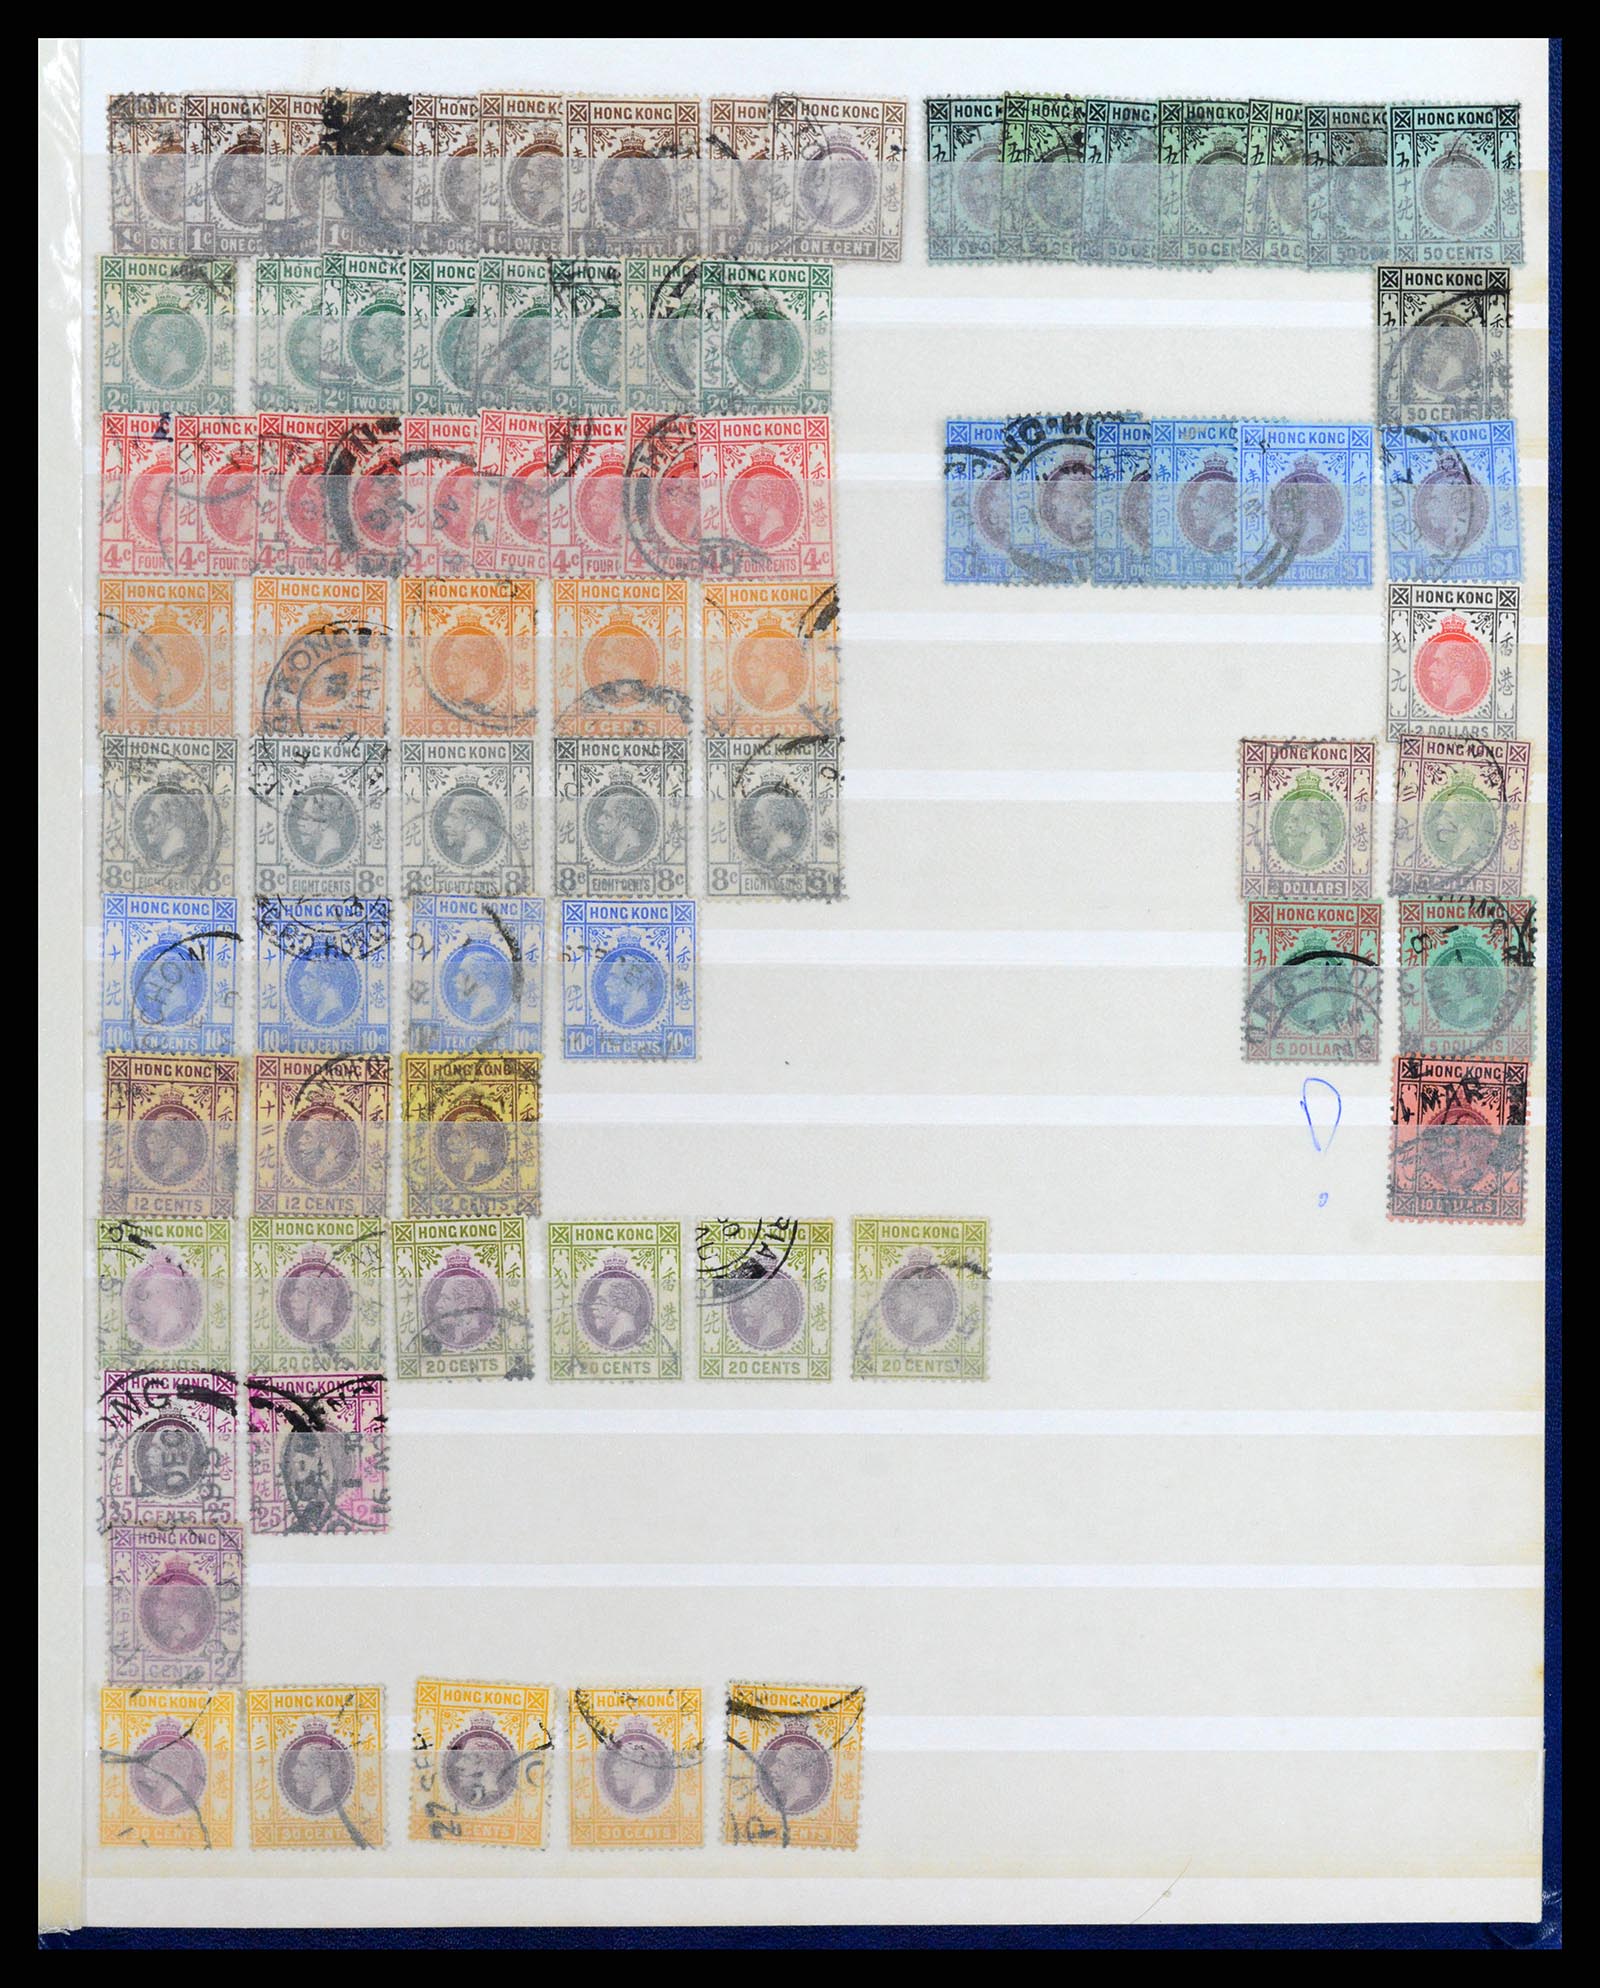 37358 044 - Stamp collection 37358 Hong Kong 1861-1997.